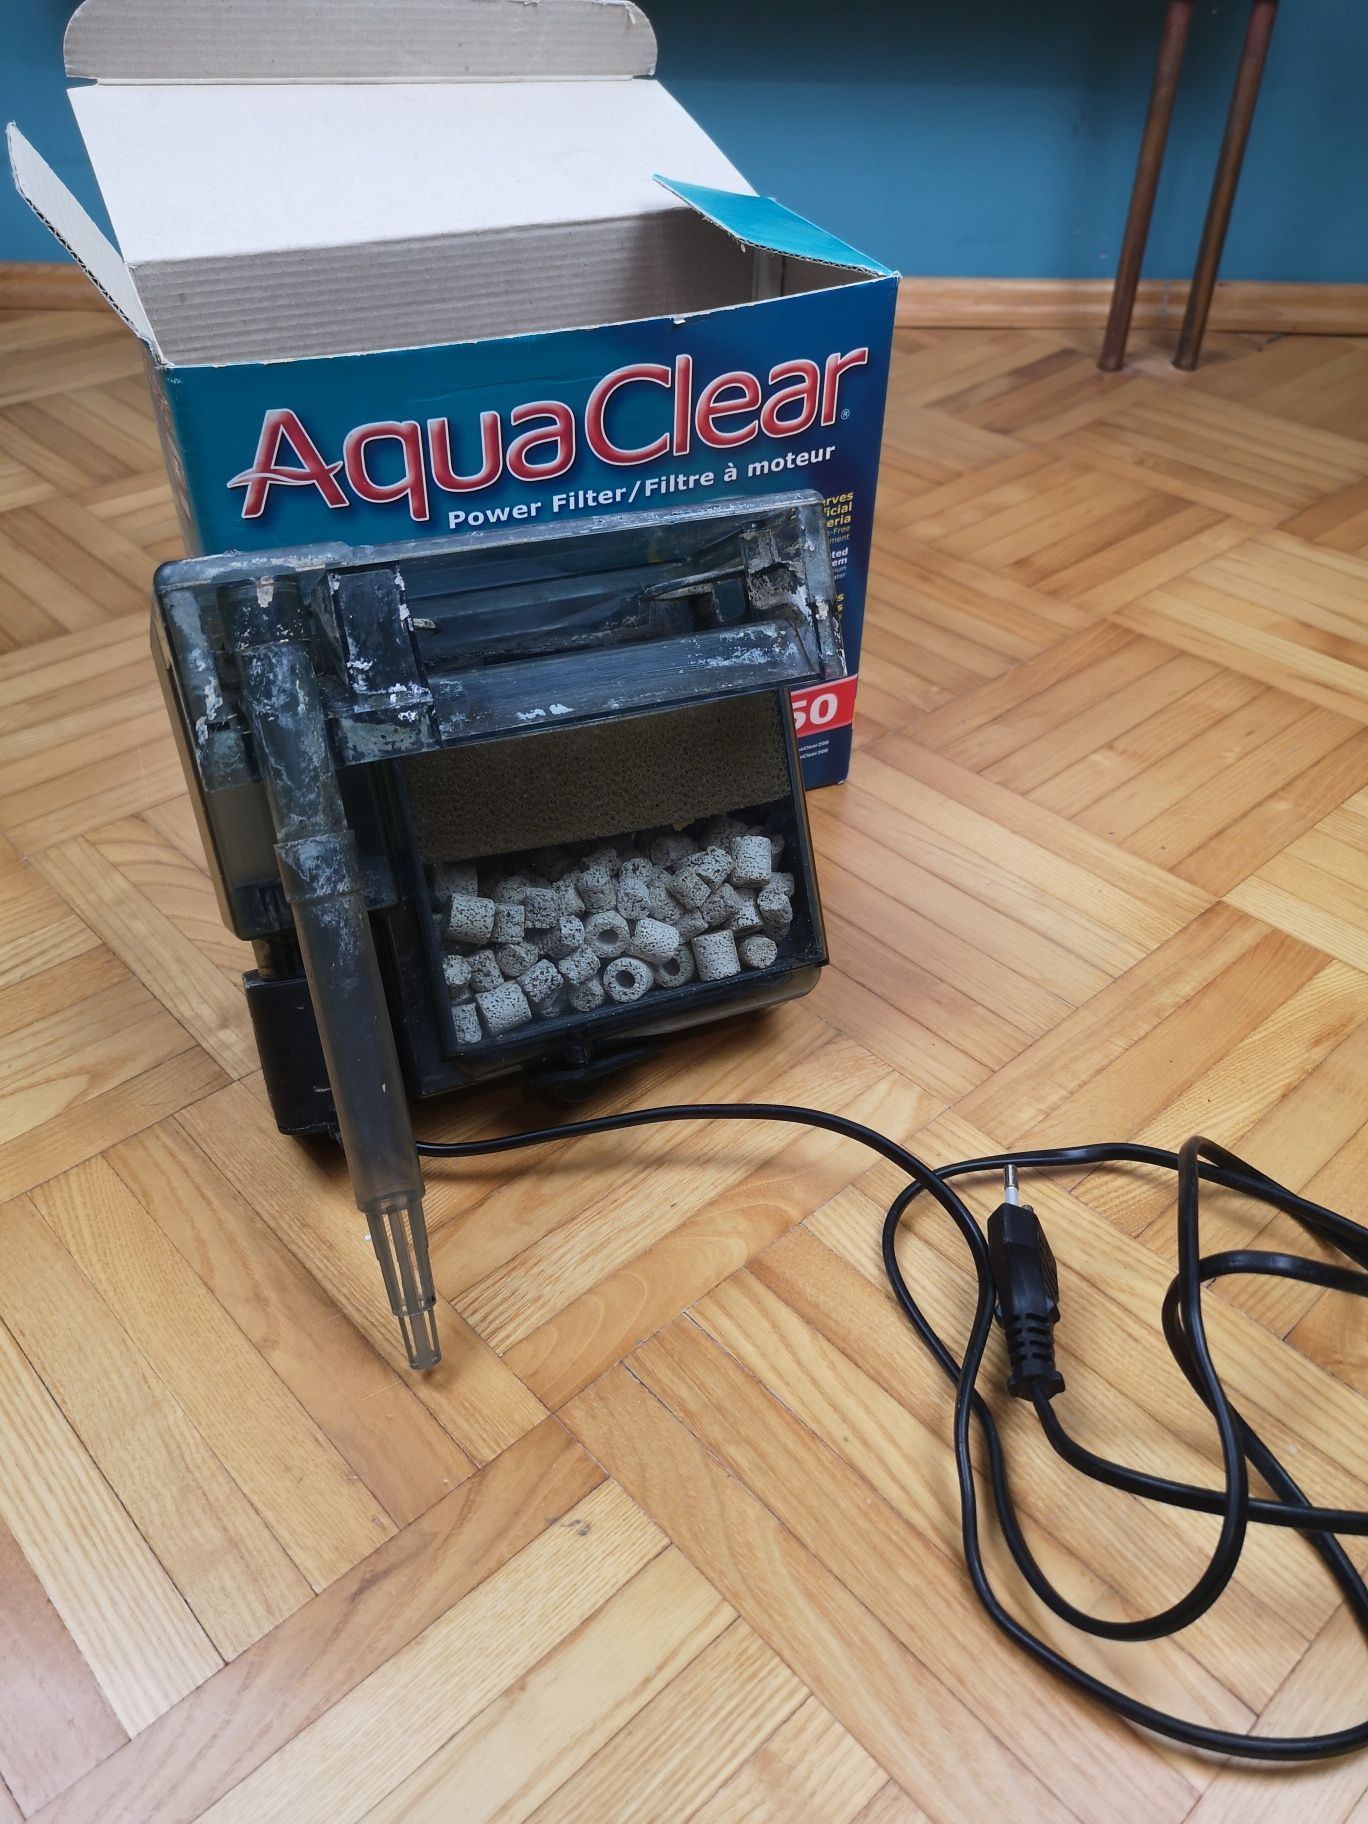 Filtr laskadowy aqua clear 50